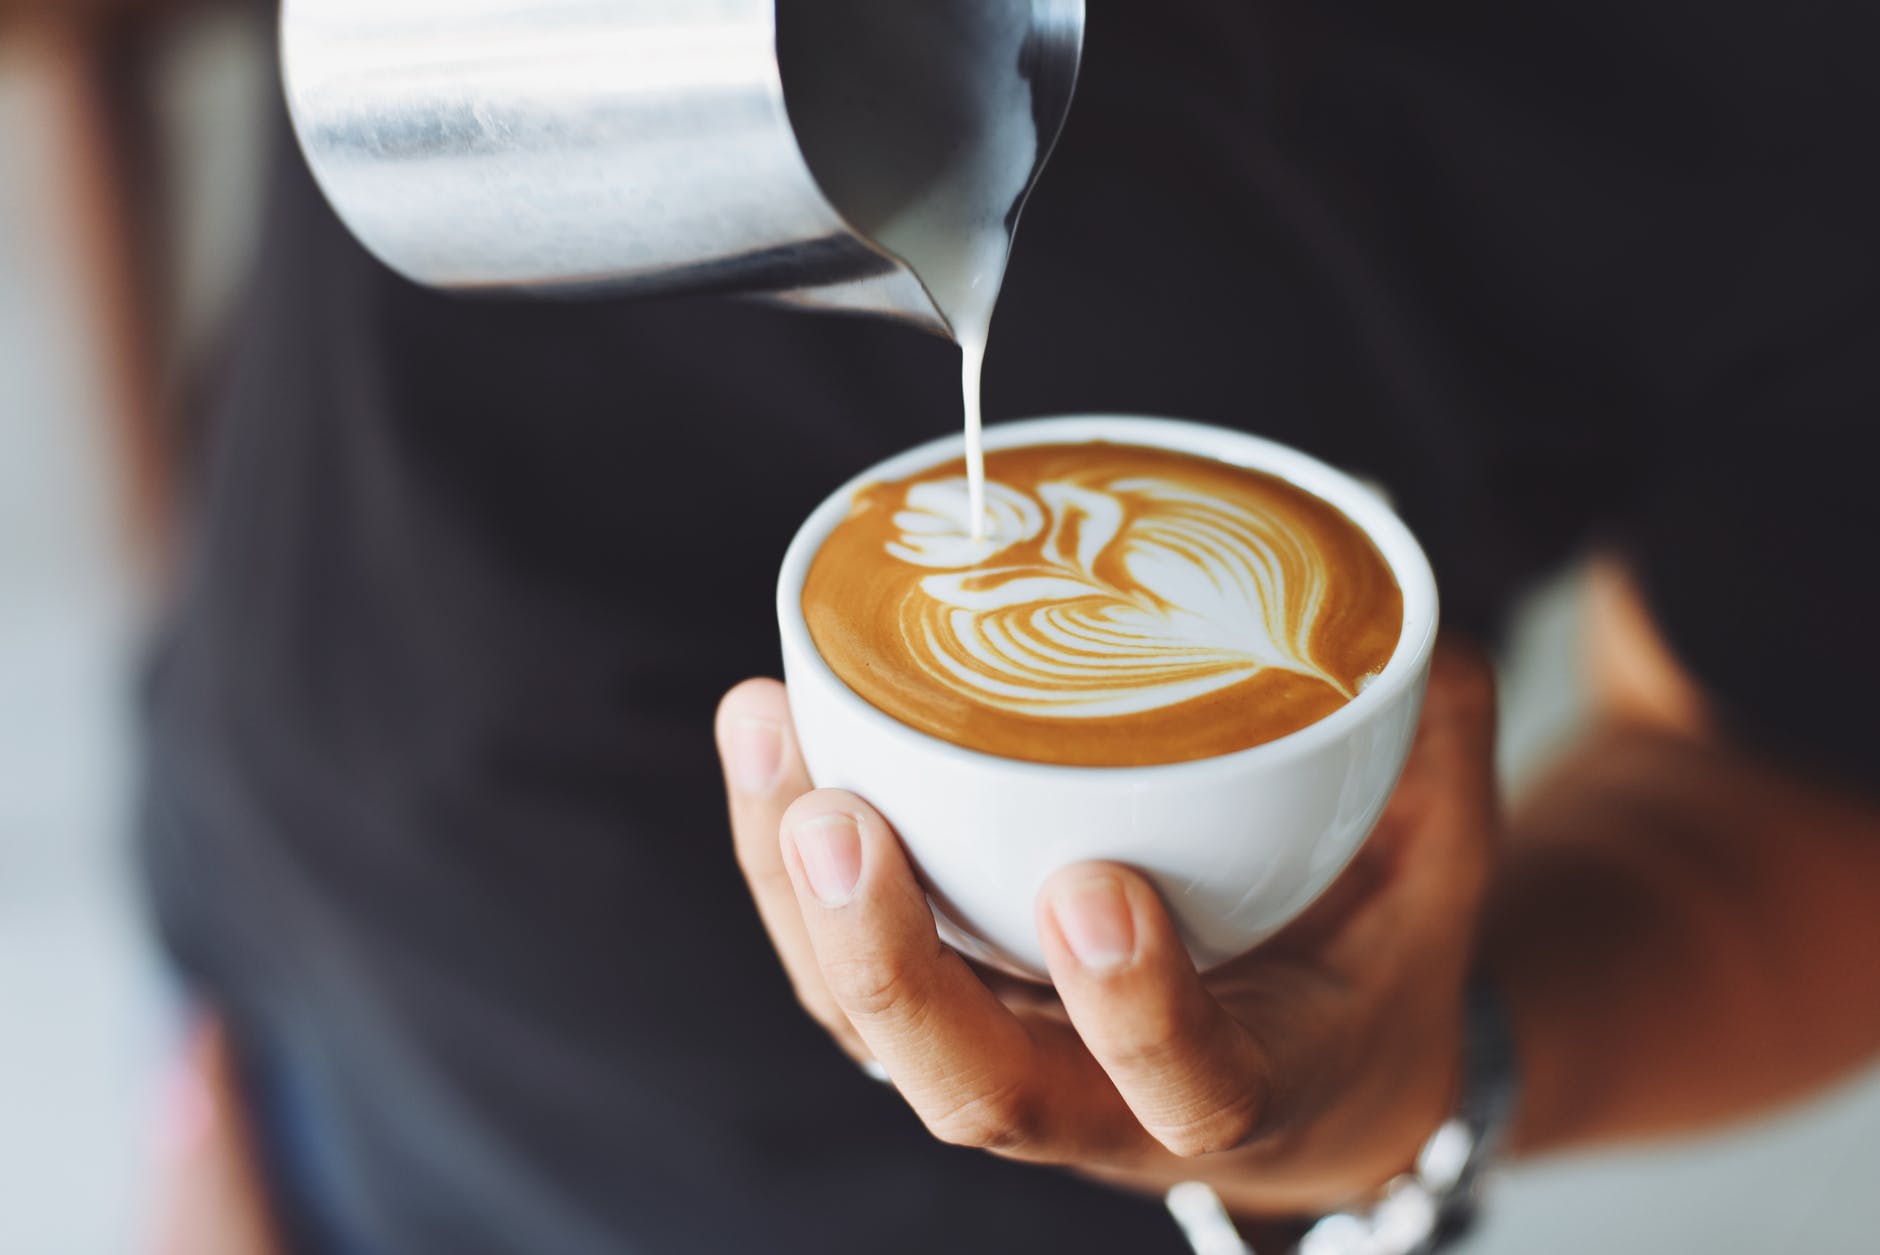 Spadla Anička do kafíčka radí lidem, kam zajít na dobrou kávu